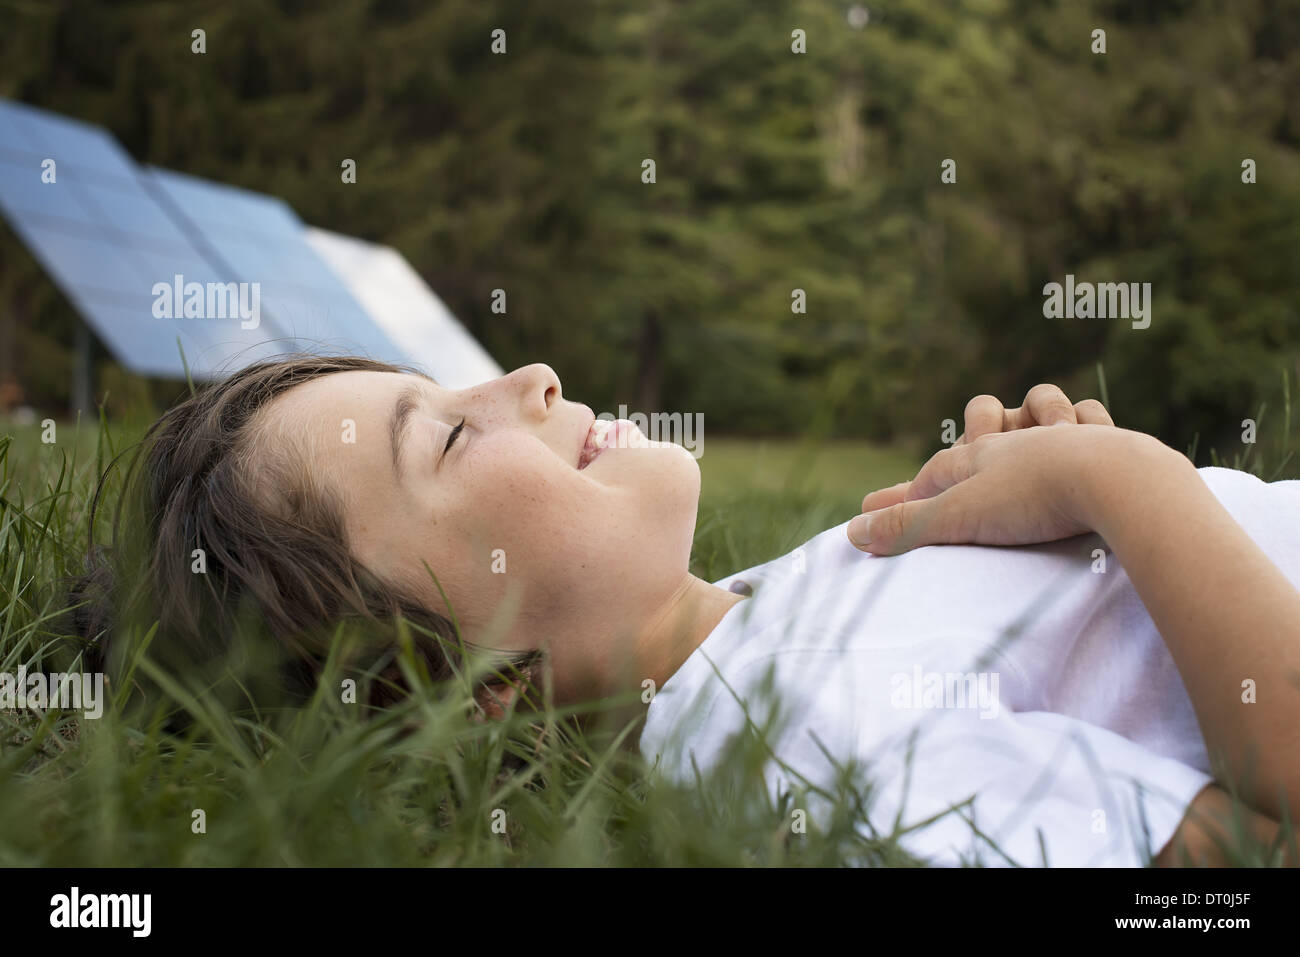 Woodstock, New York USA garçon couché dans l'herbe à côté du panneau solaire Banque D'Images